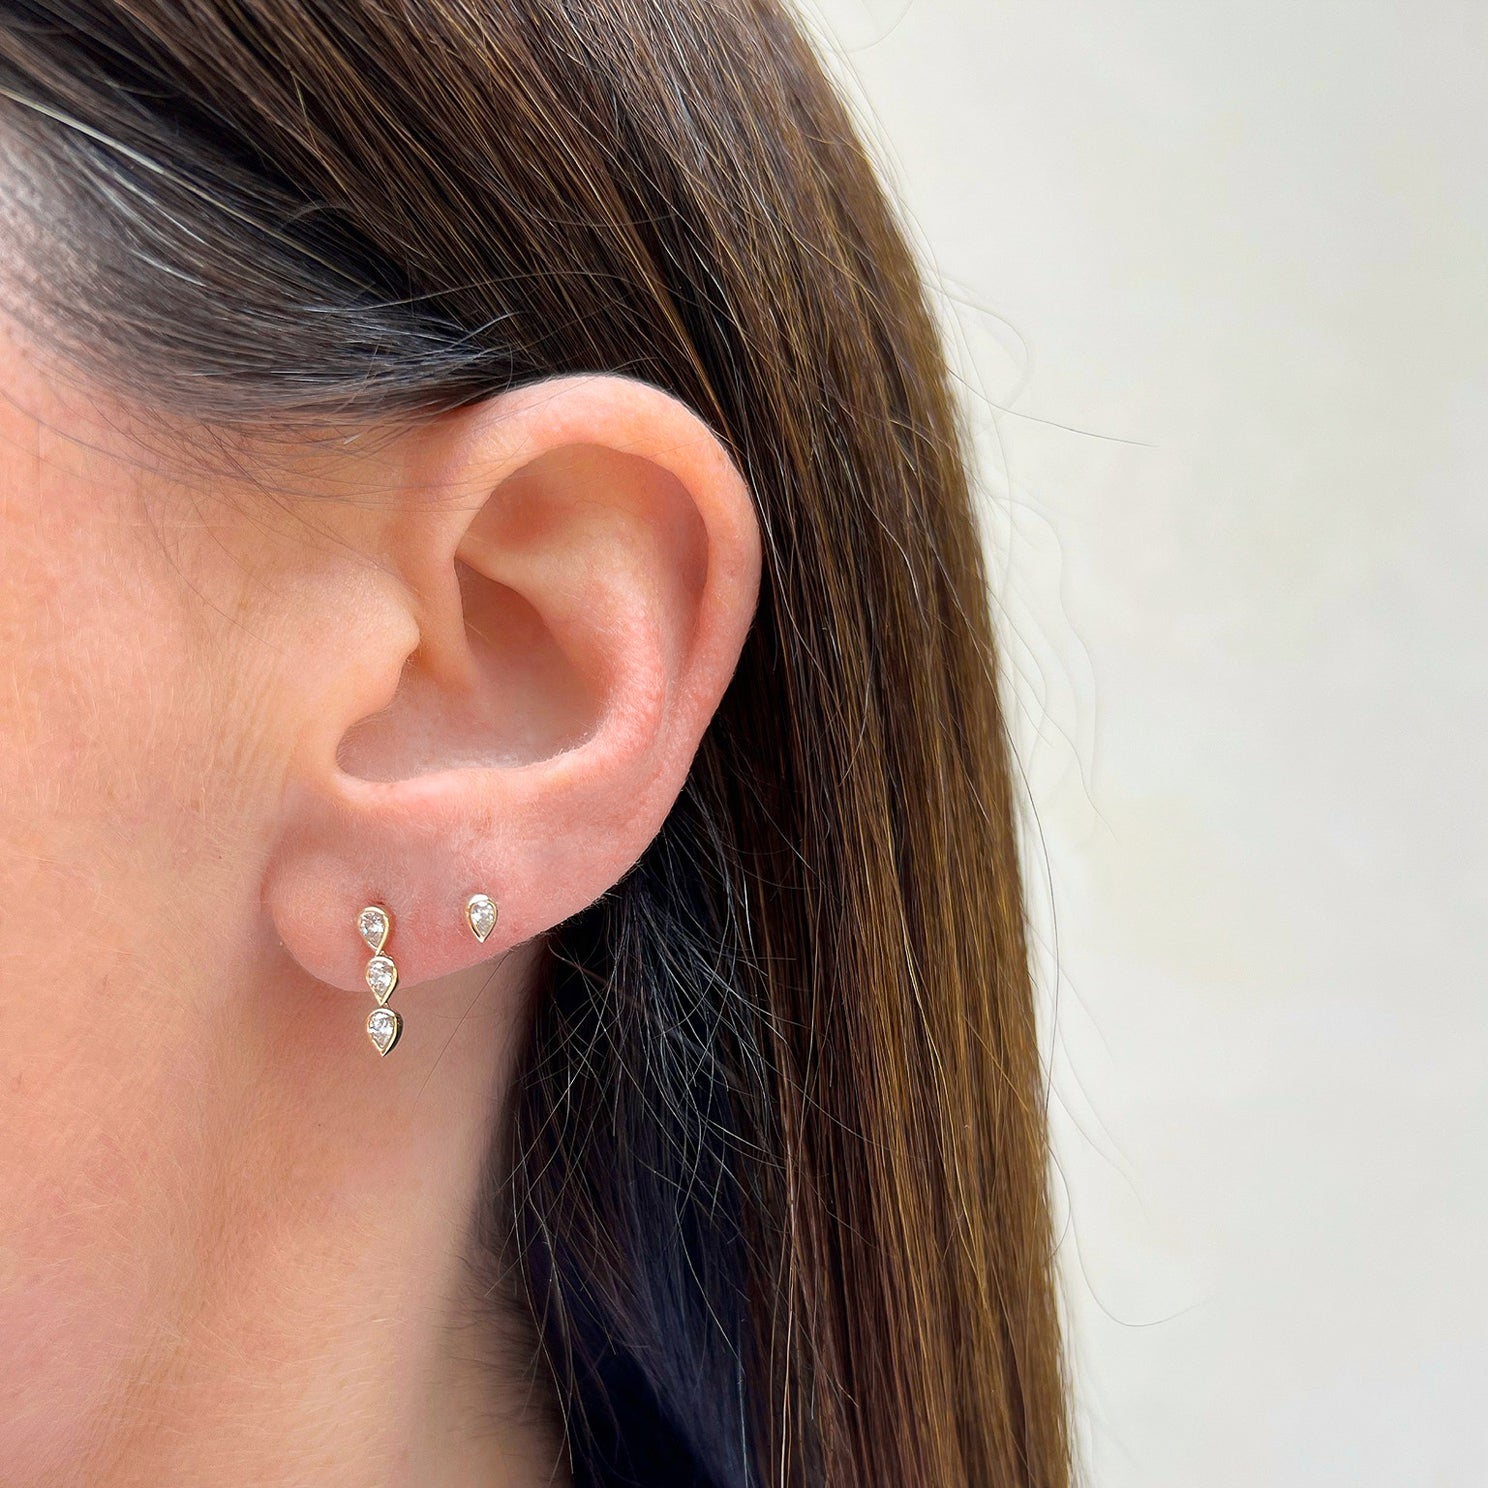 Bezel Set Diamond Pear Stud Earring in 14k yellow gold styled on second earring hole of model next to diamond pear drop earring